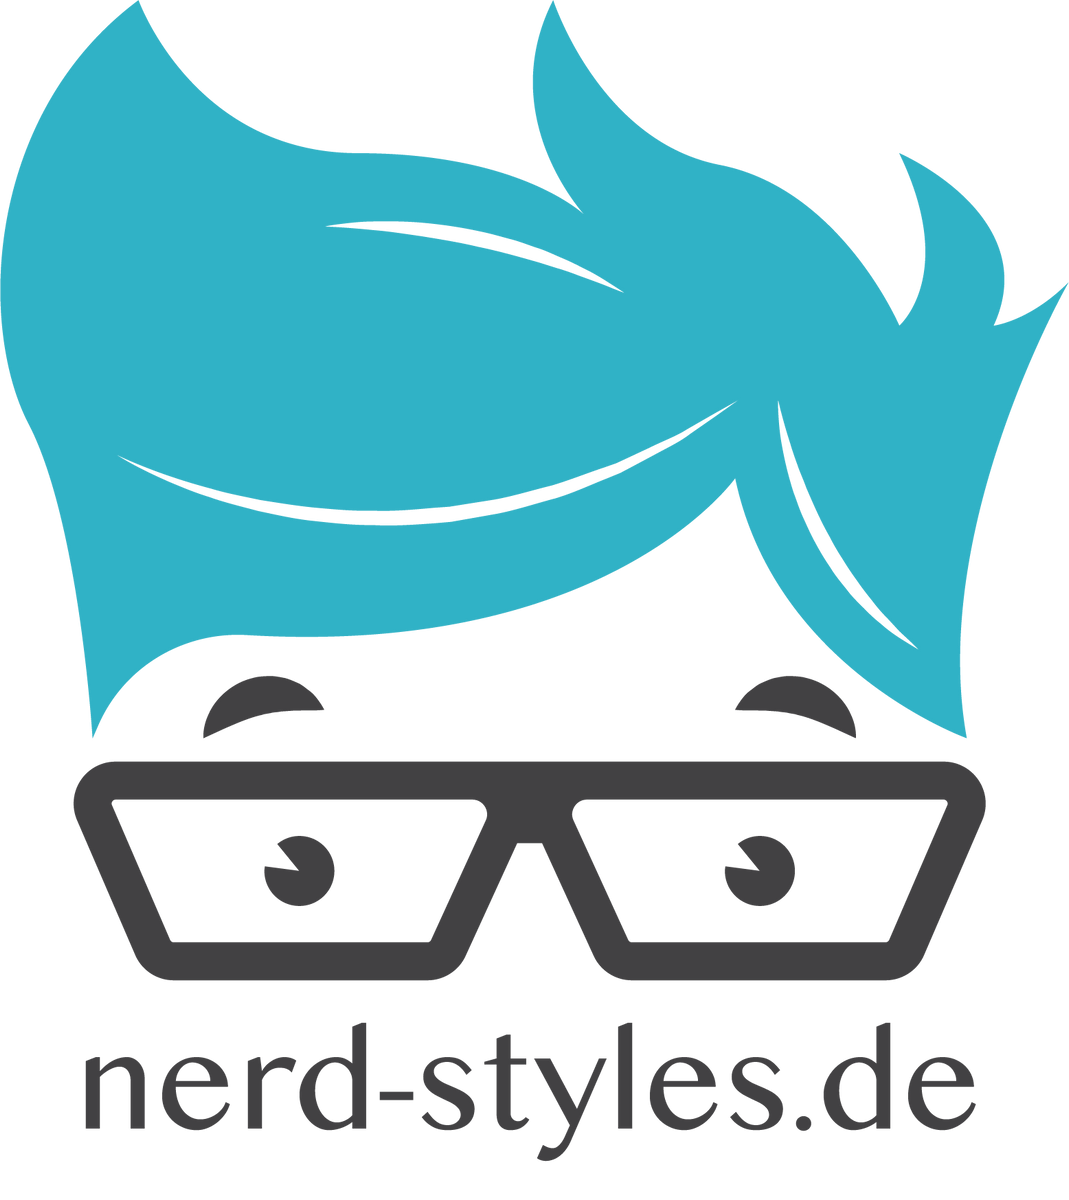 nerd-styles.de